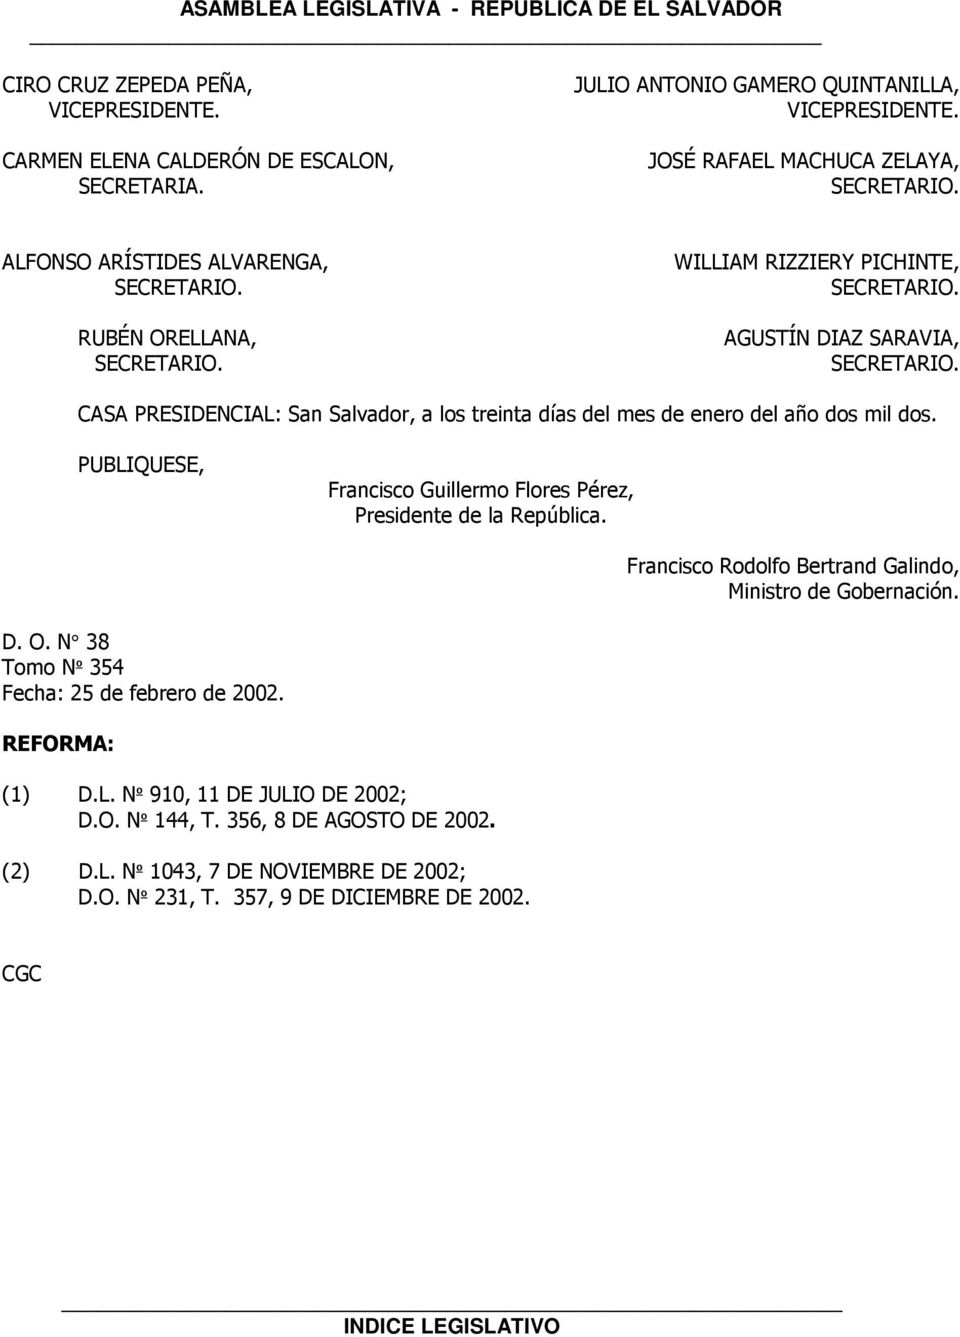 CASA PRESIDENCIAL: San Salvador, a los treinta días del mes de enero del año dos mil dos. PUBLIQUESE, Francisco Guillermo Flores Pérez, Presidente de la República.